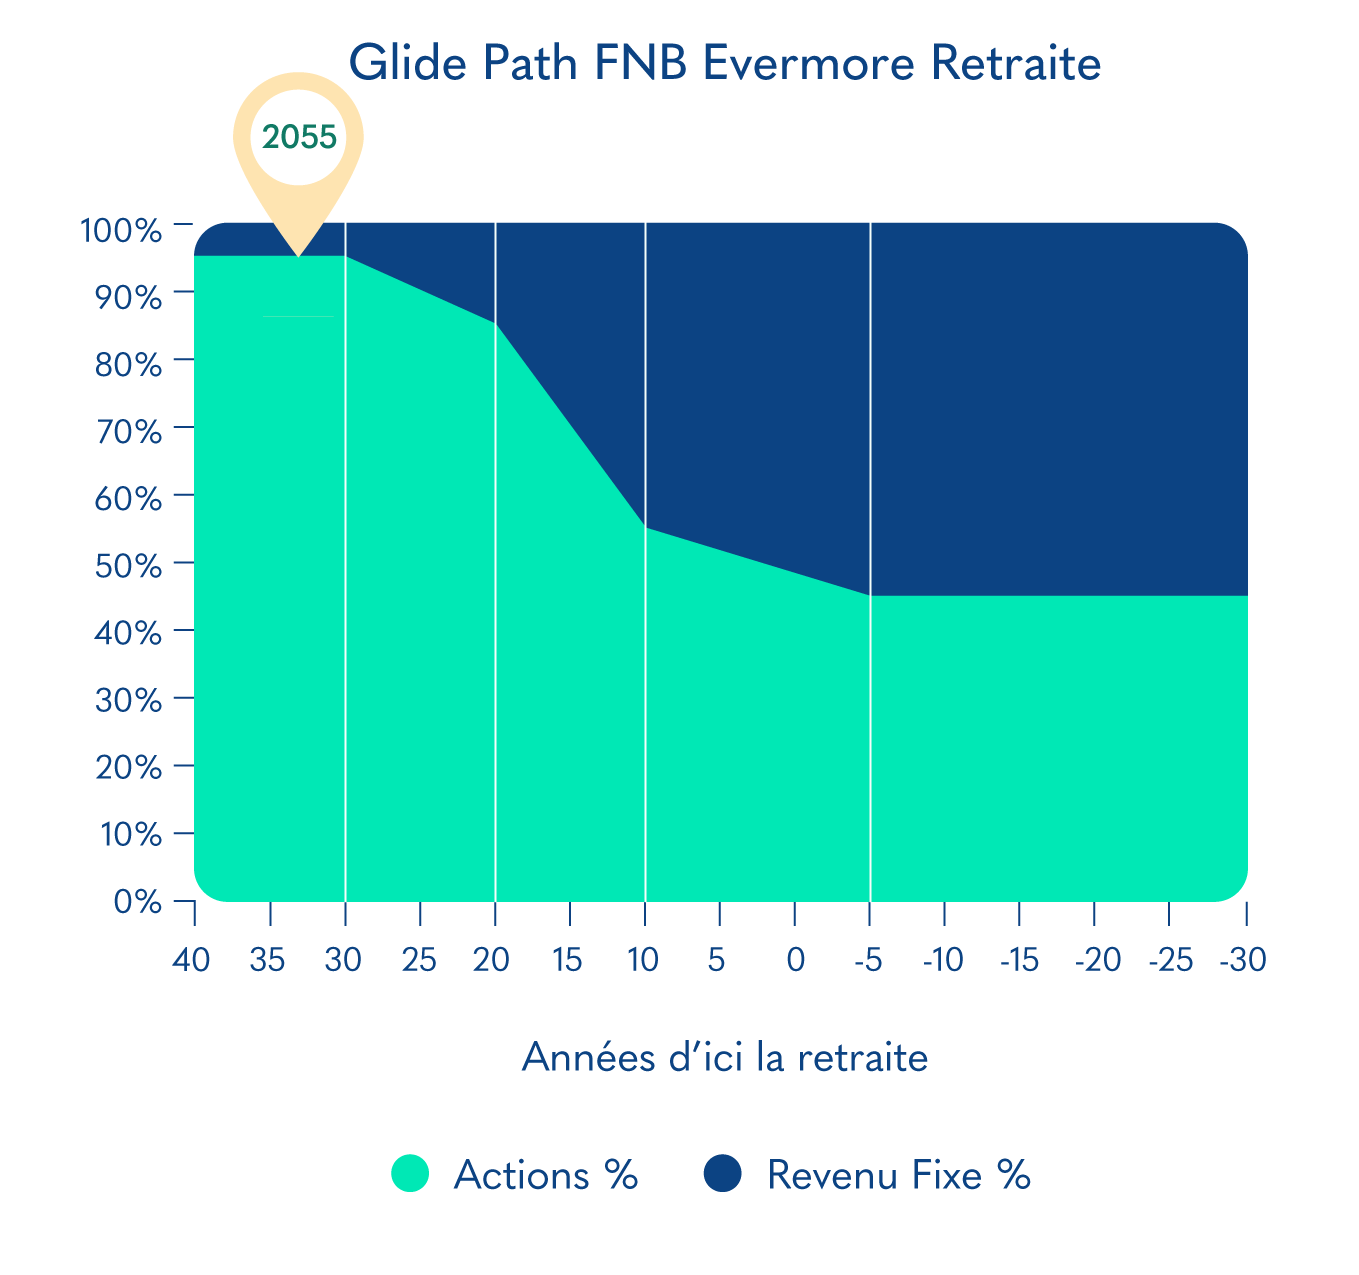 Glide Path FNB Evermore Retraite 2055